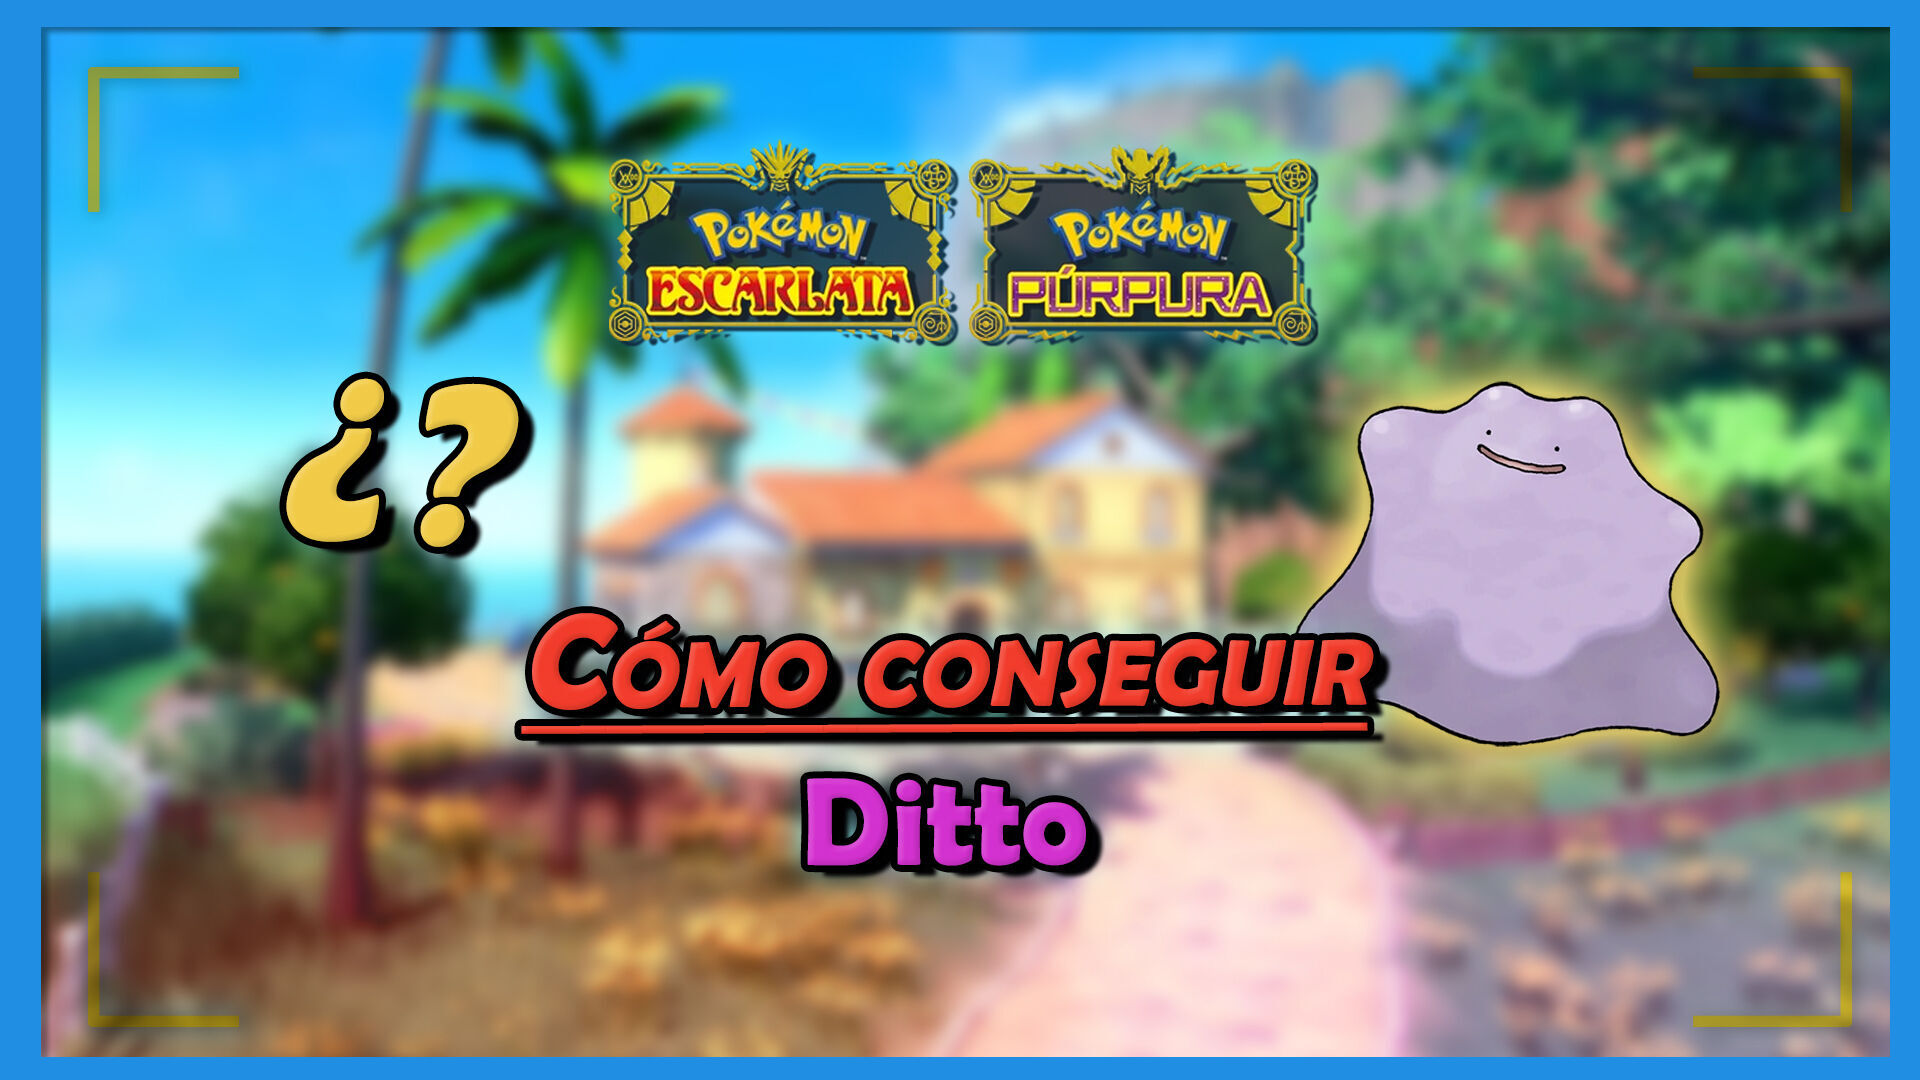 CAPTURANDO A DITTO !! - Pokemon GO en VIVO LOCALIZACION DE DITTO -  COORDENADAS DE DITTO EN VIVO 